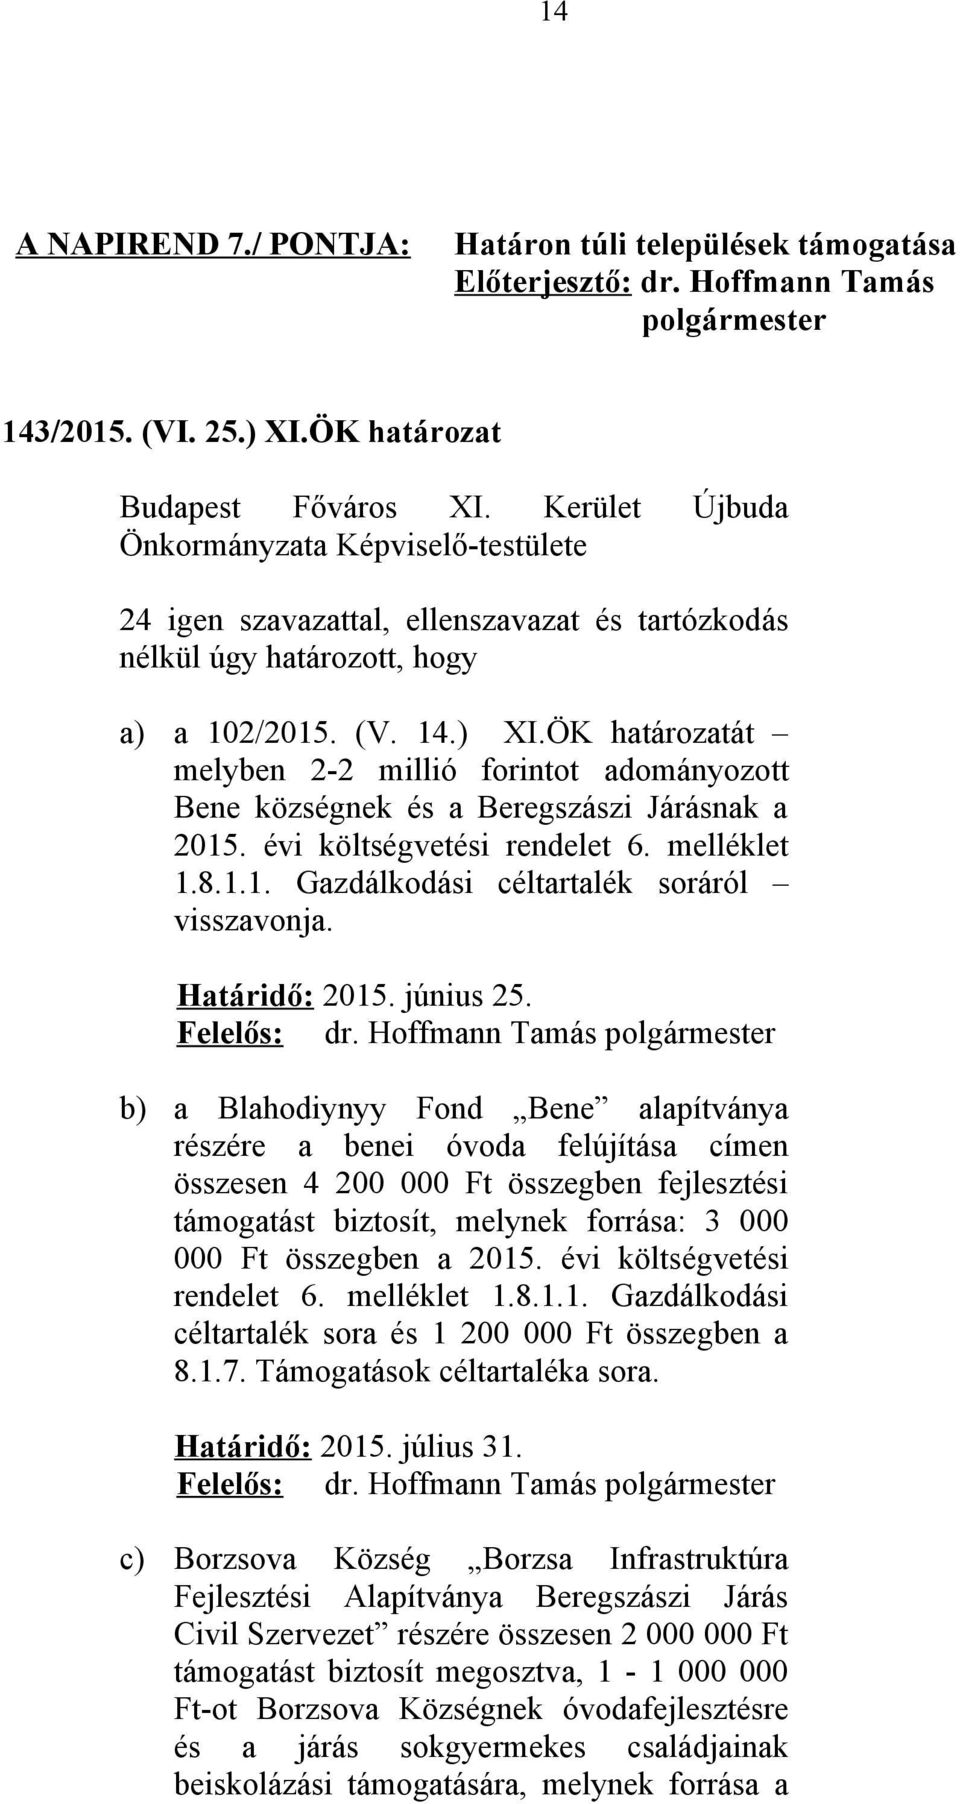 ÖK határozatát melyben 2-2 millió forintot adományozott Bene községnek és a Beregszászi Járásnak a 2015. évi költségvetési rendelet 6. melléklet 1.8.1.1. Gazdálkodási céltartalék soráról visszavonja.